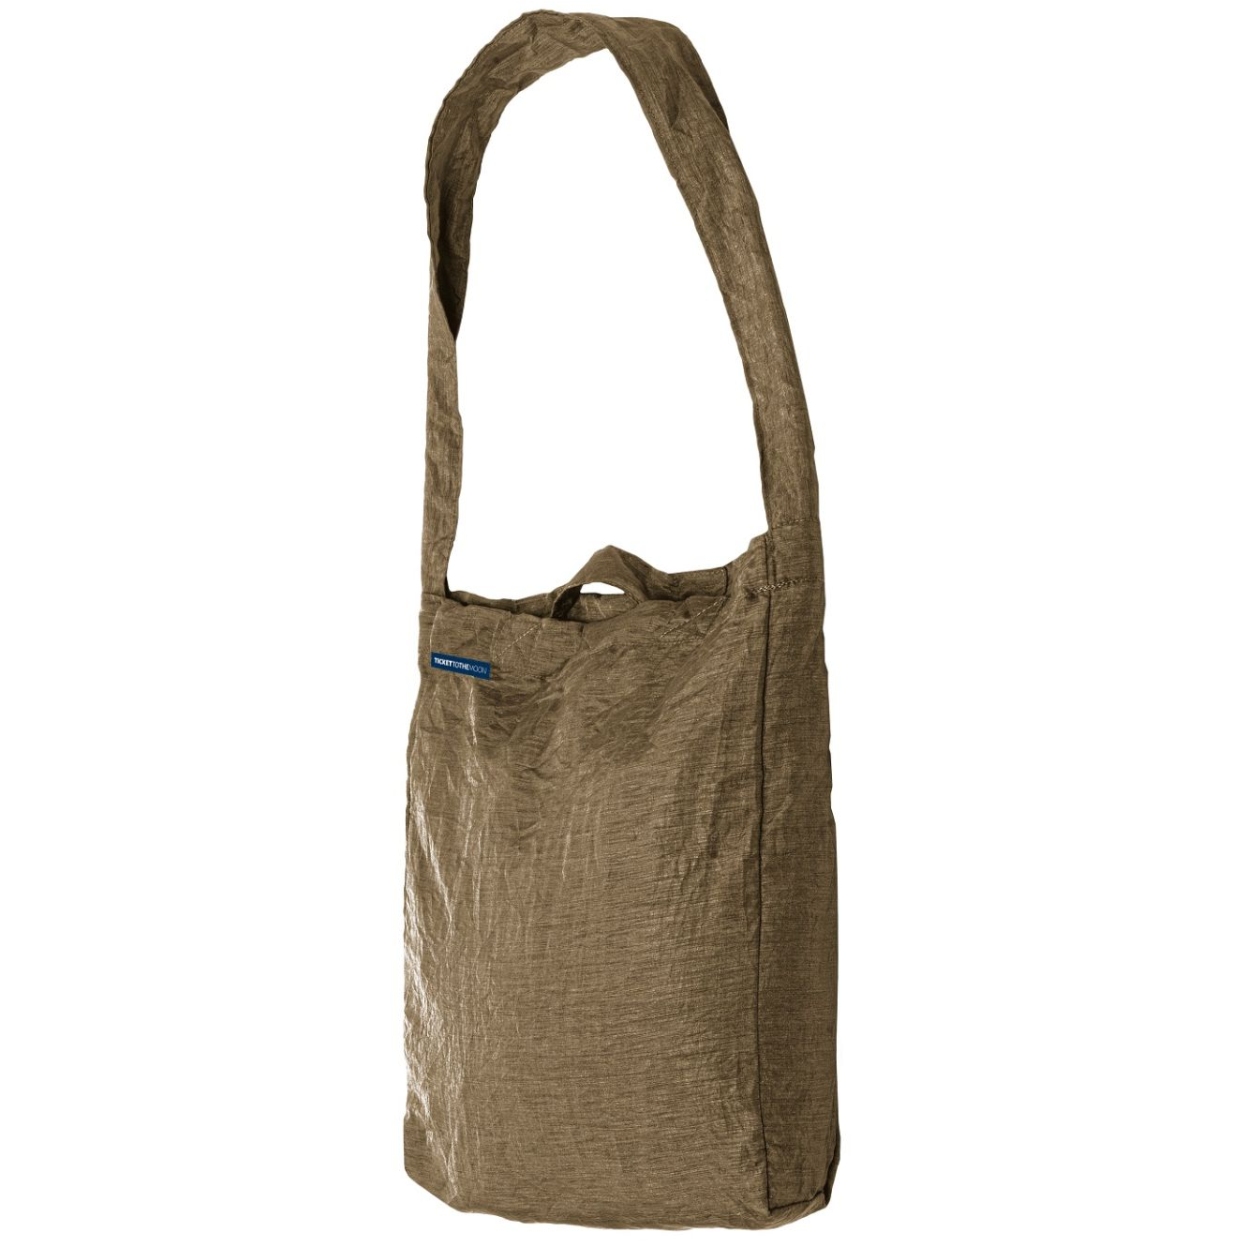 Productfoto van Ticket To The Moon Eco Bag Medium Premium Boodschappentas 15L - Olive Brown